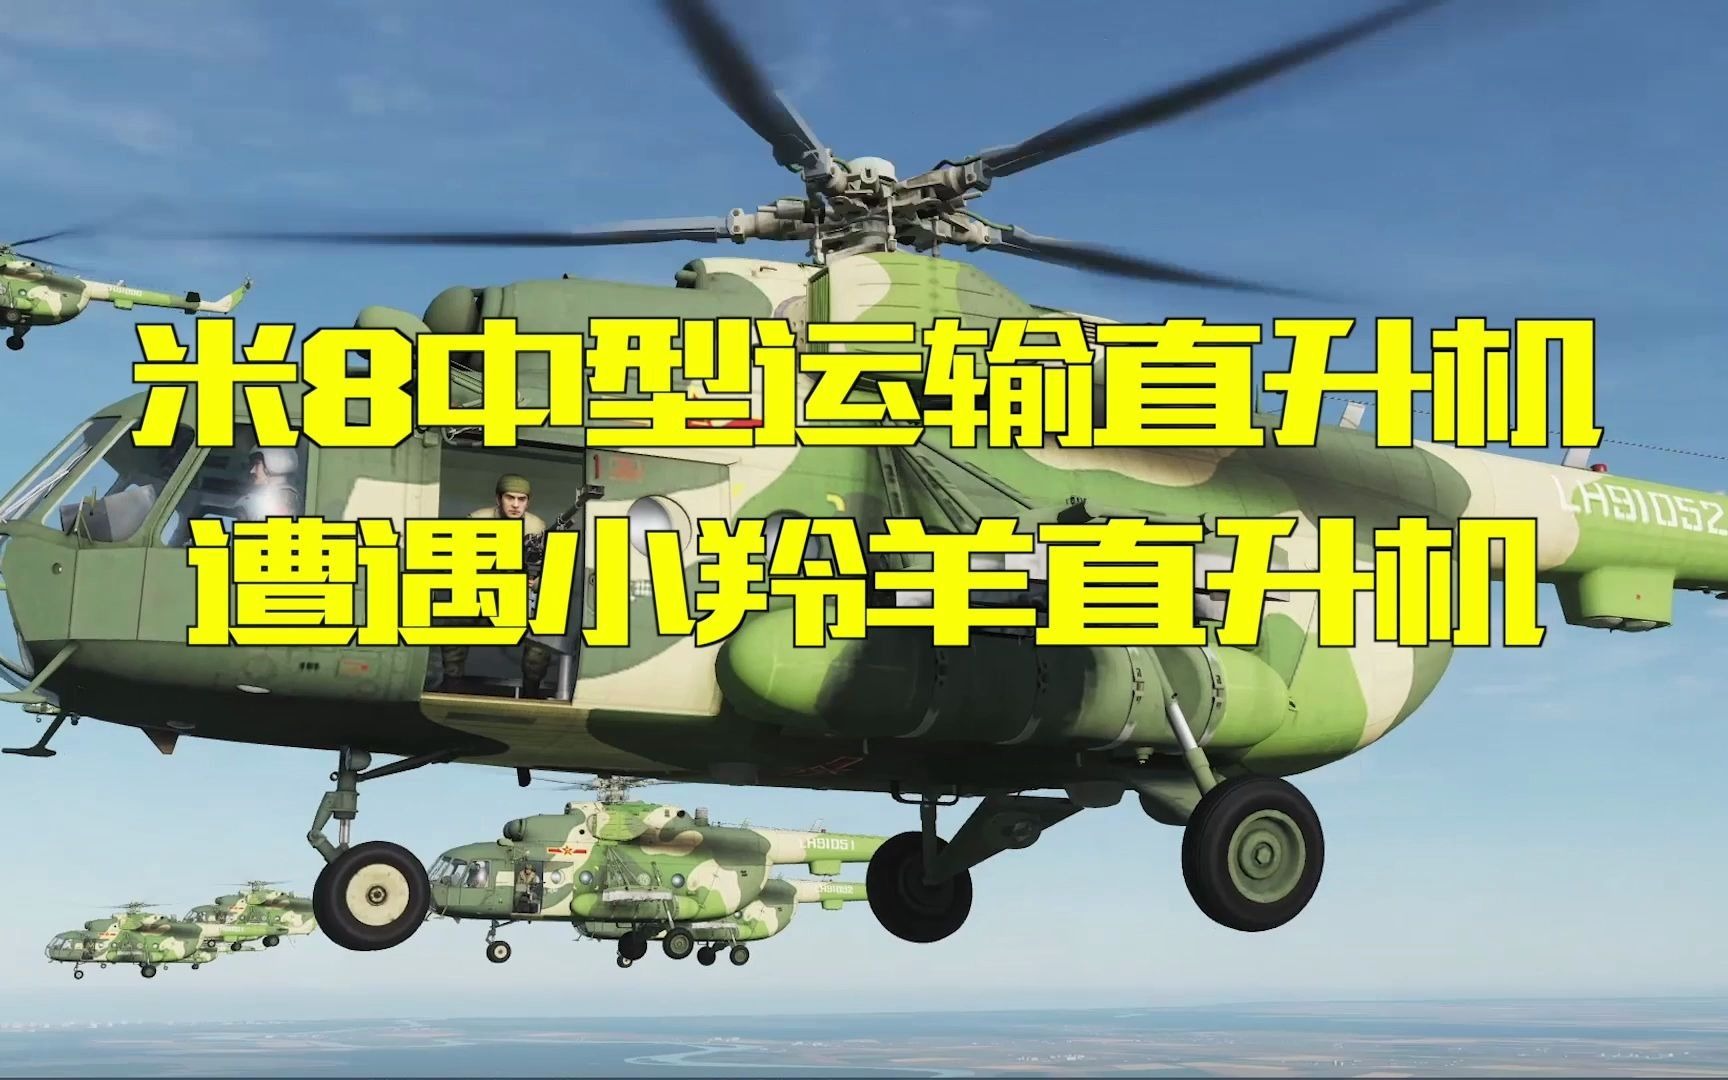 河马直升机对战小羚羊直升机能赢吗，一场直升机间的空战